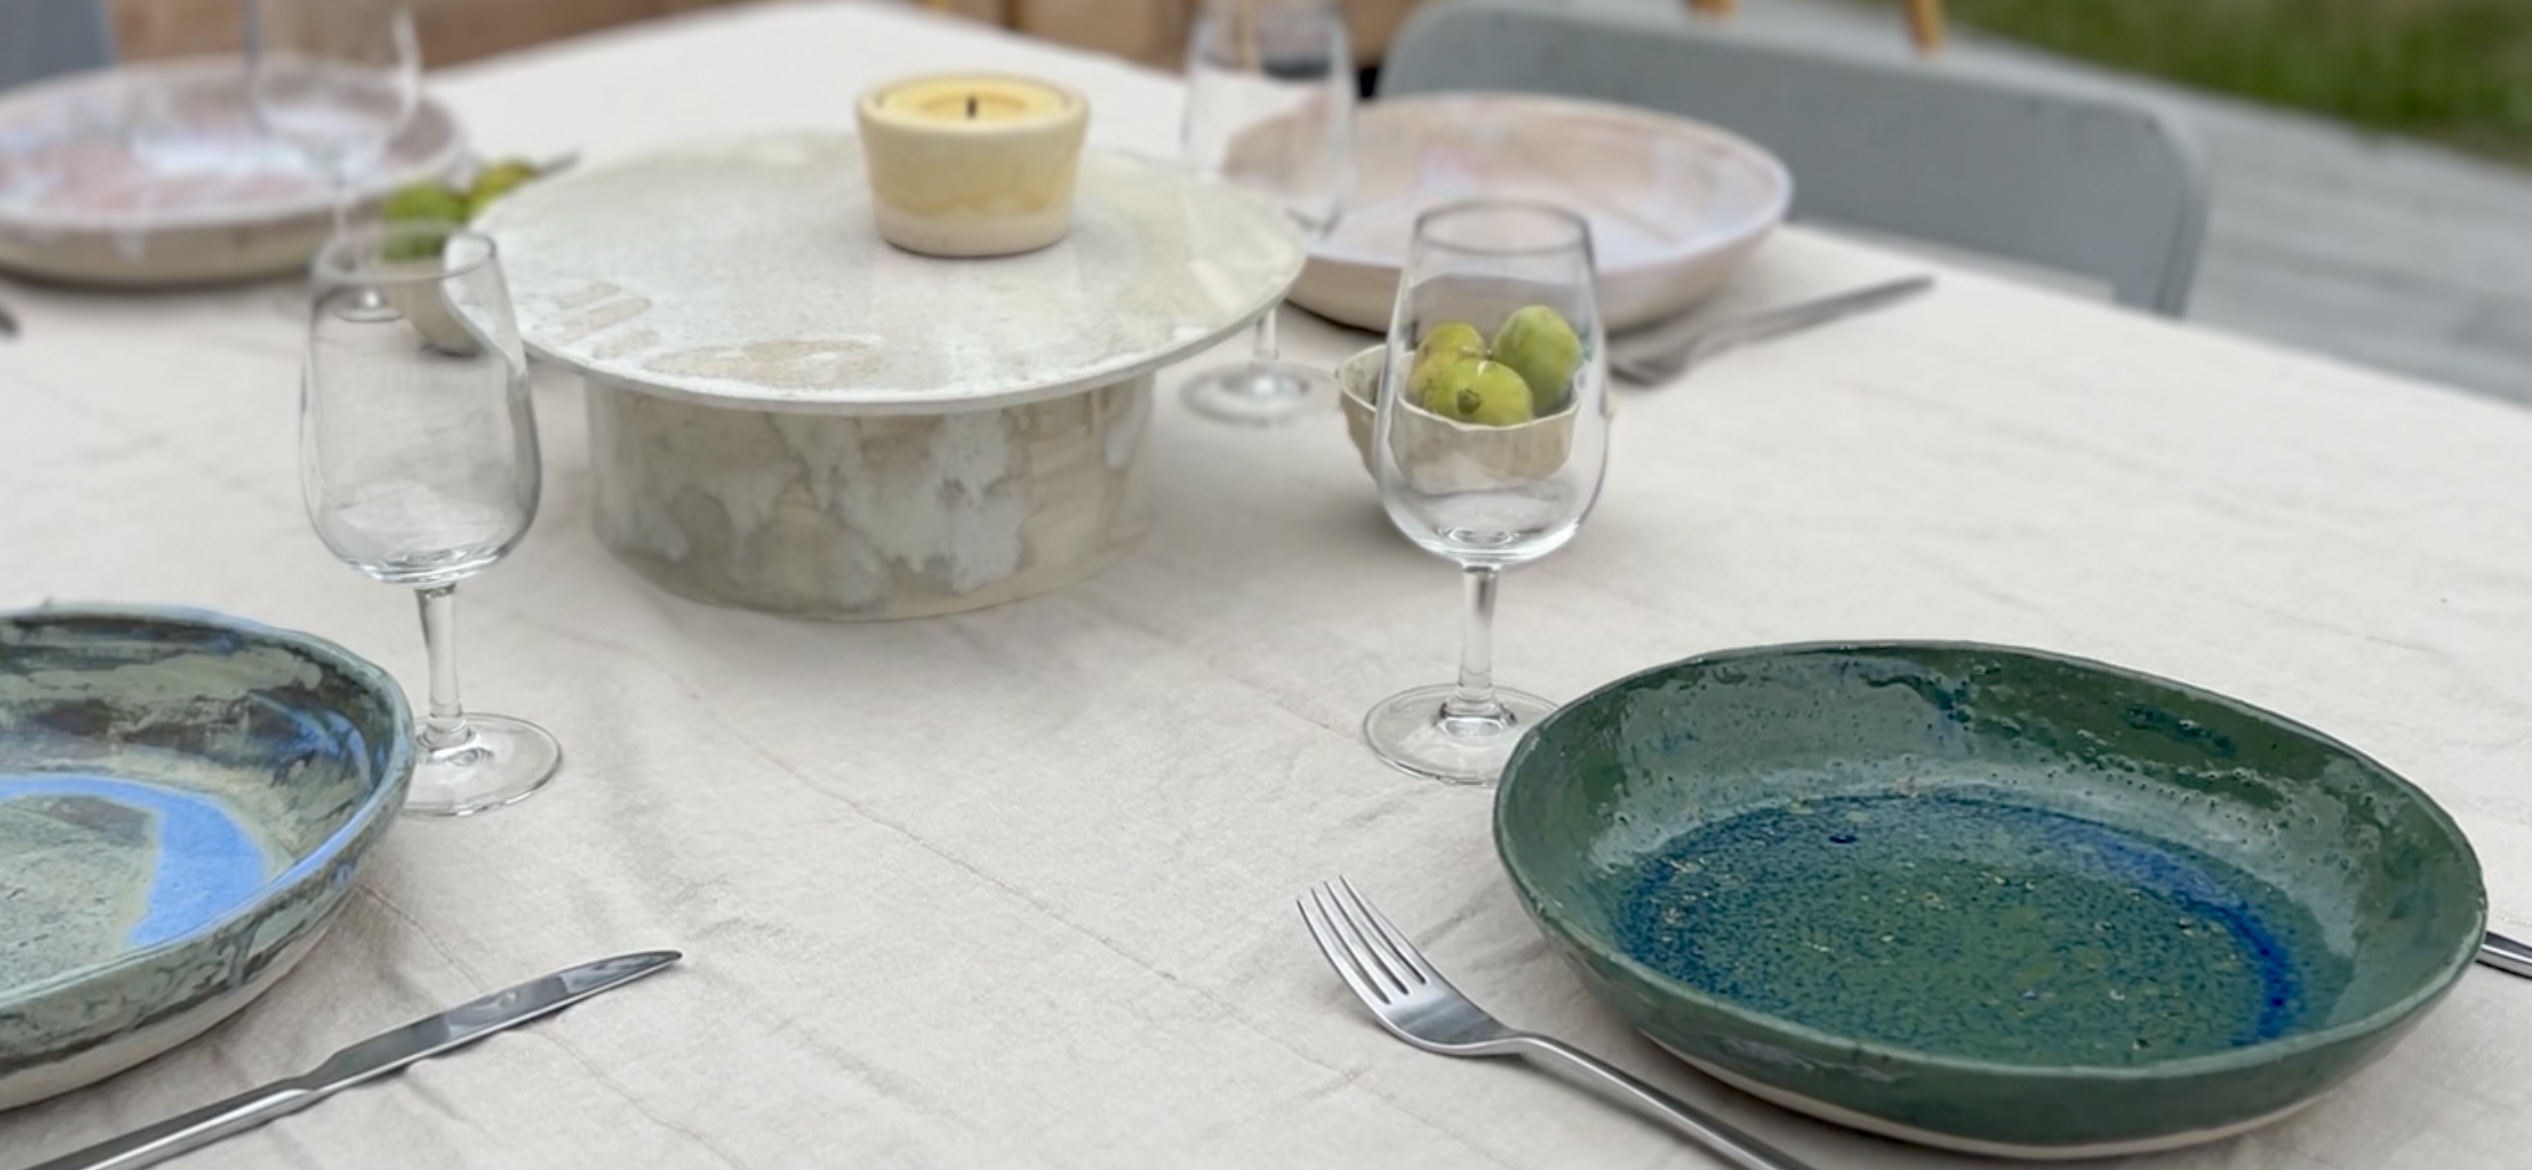 Assiettes en Grès Dépareillées : Charme Artisanal pour Votre Table